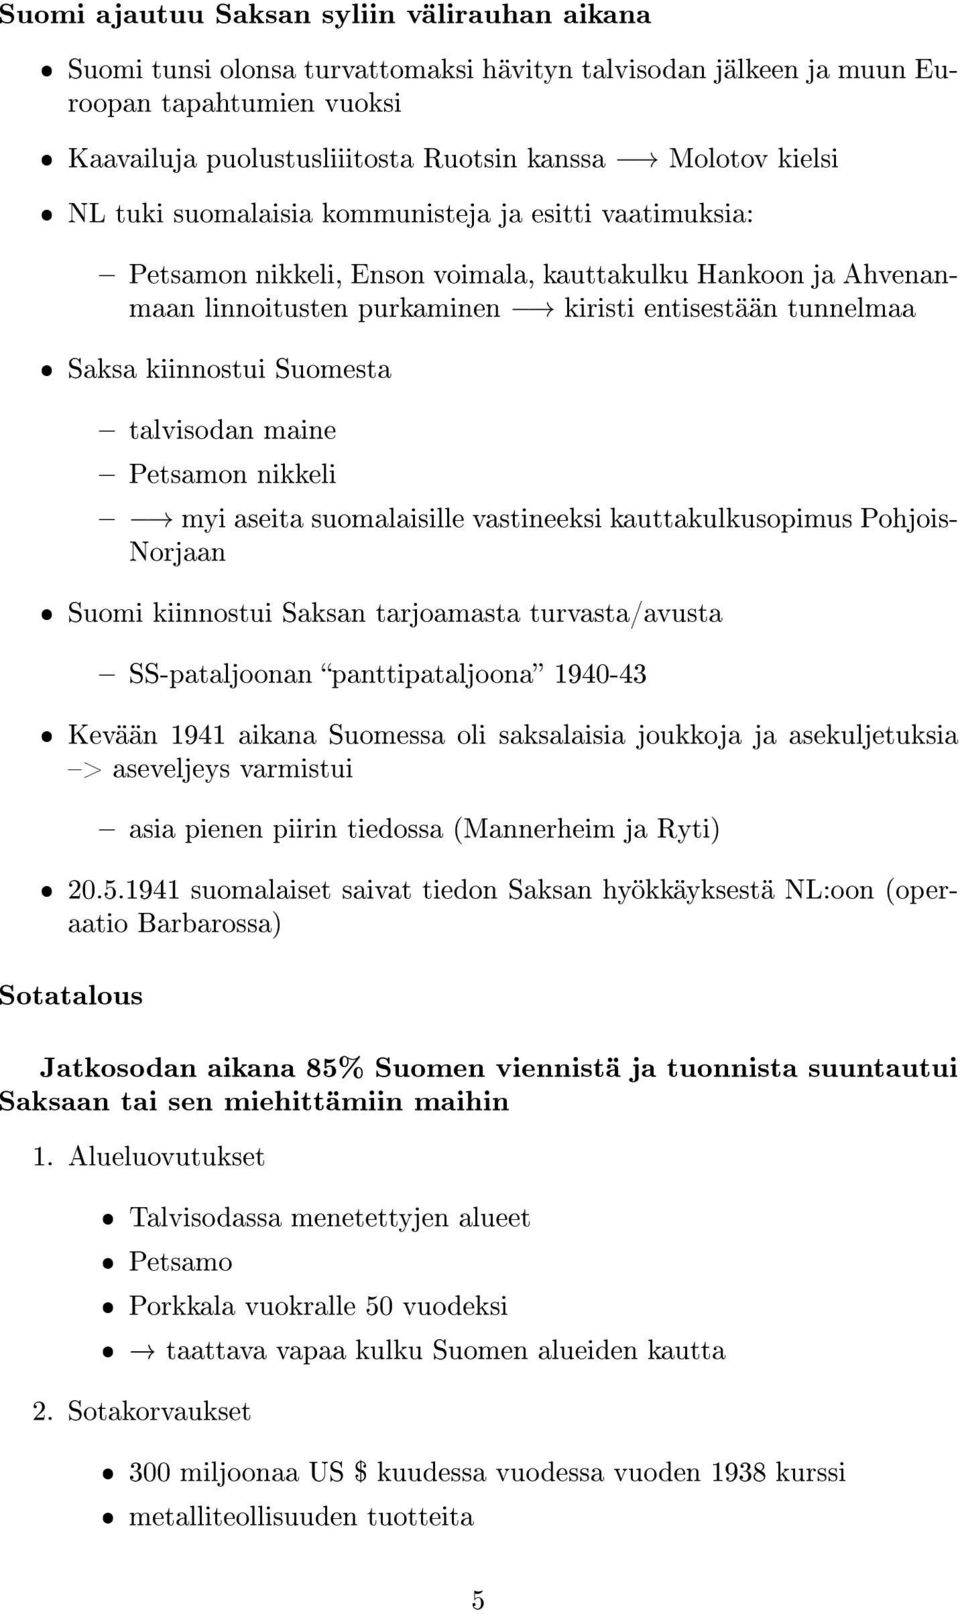 kiinnostui Suomesta talvisodan maine Petsamon nikkeli myi aseita suomalaisille vastineeksi kauttakulkusopimus Pohjois- Norjaan ˆ Suomi kiinnostui Saksan tarjoamasta turvasta/avusta SS-pataljoonan